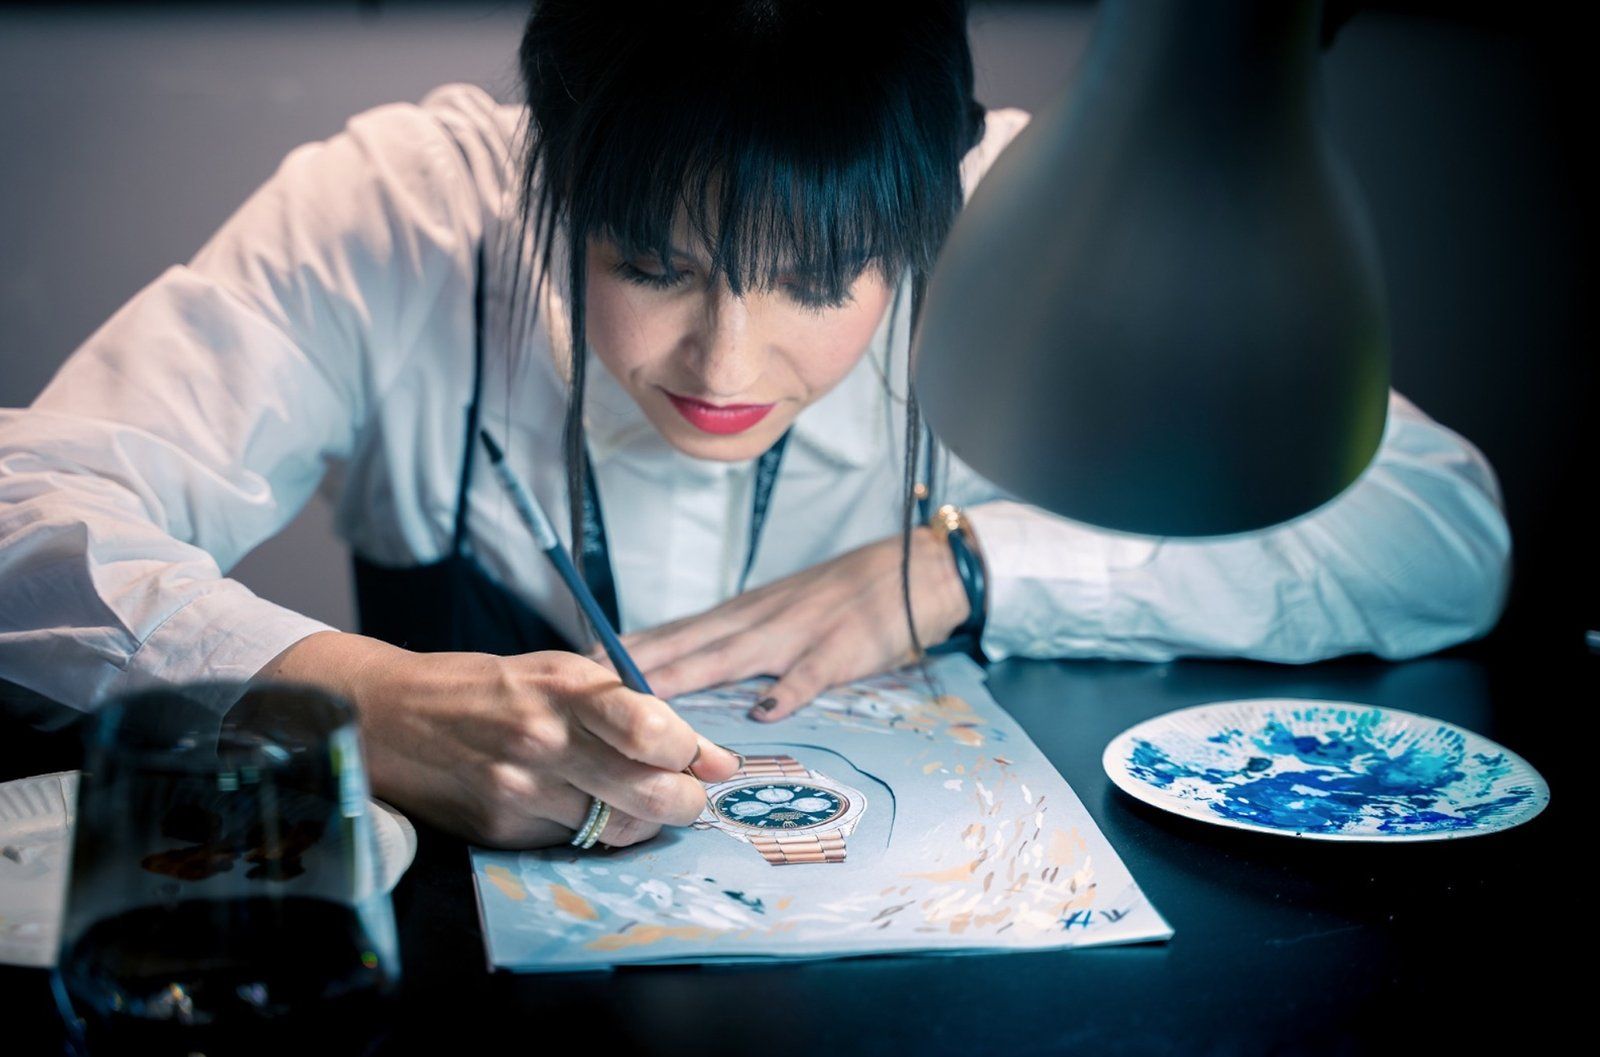 Estelle Lagarde, Gouache artist and Haute Joaillerie-horlogerie designer